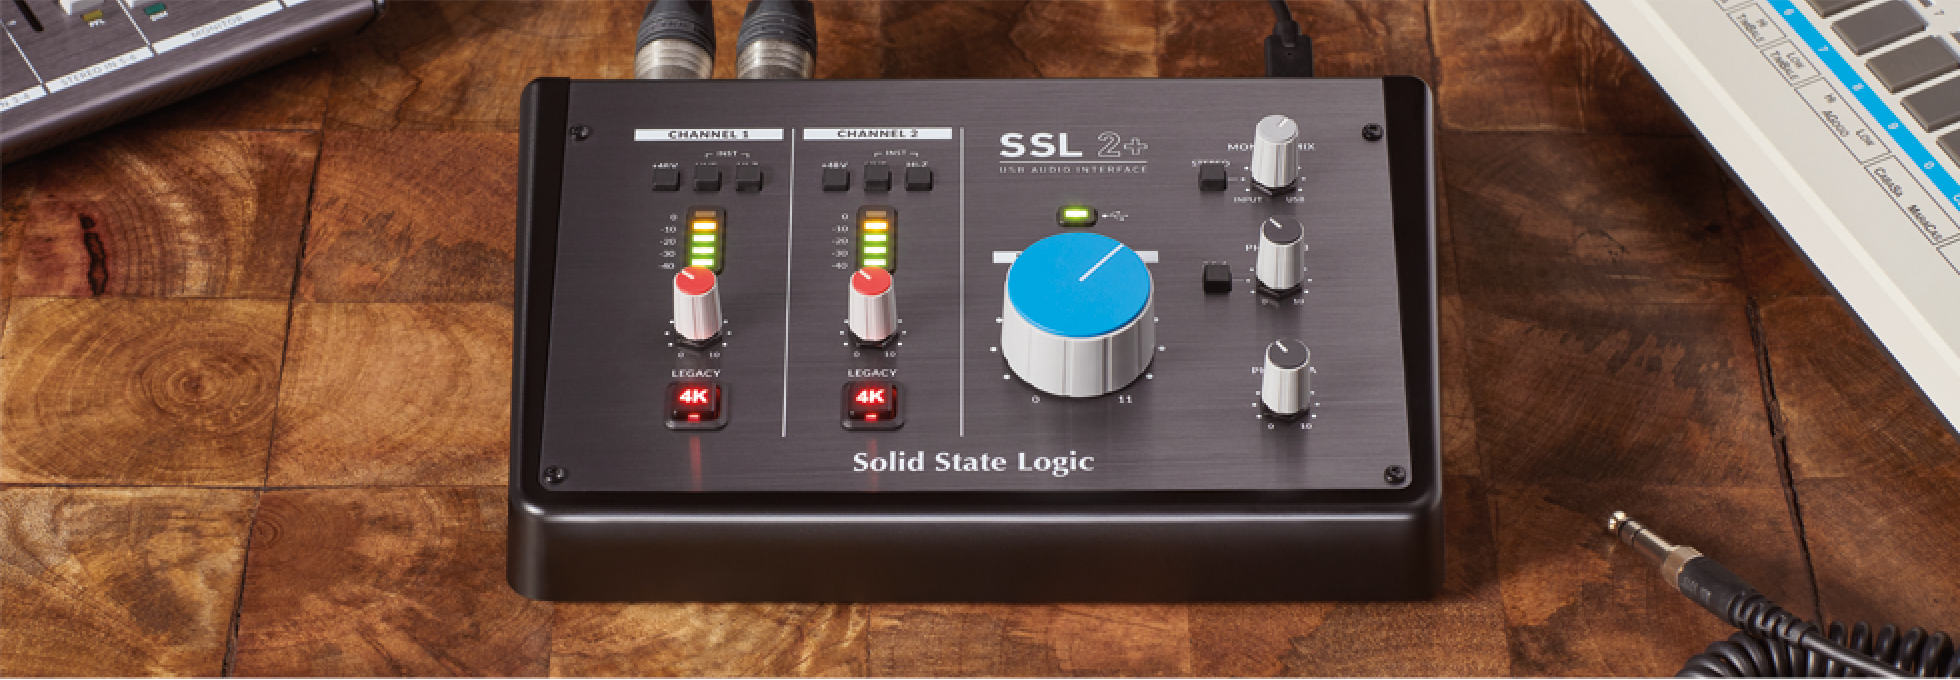 Ssl 2+ - Interface de audio USB - Variation 3